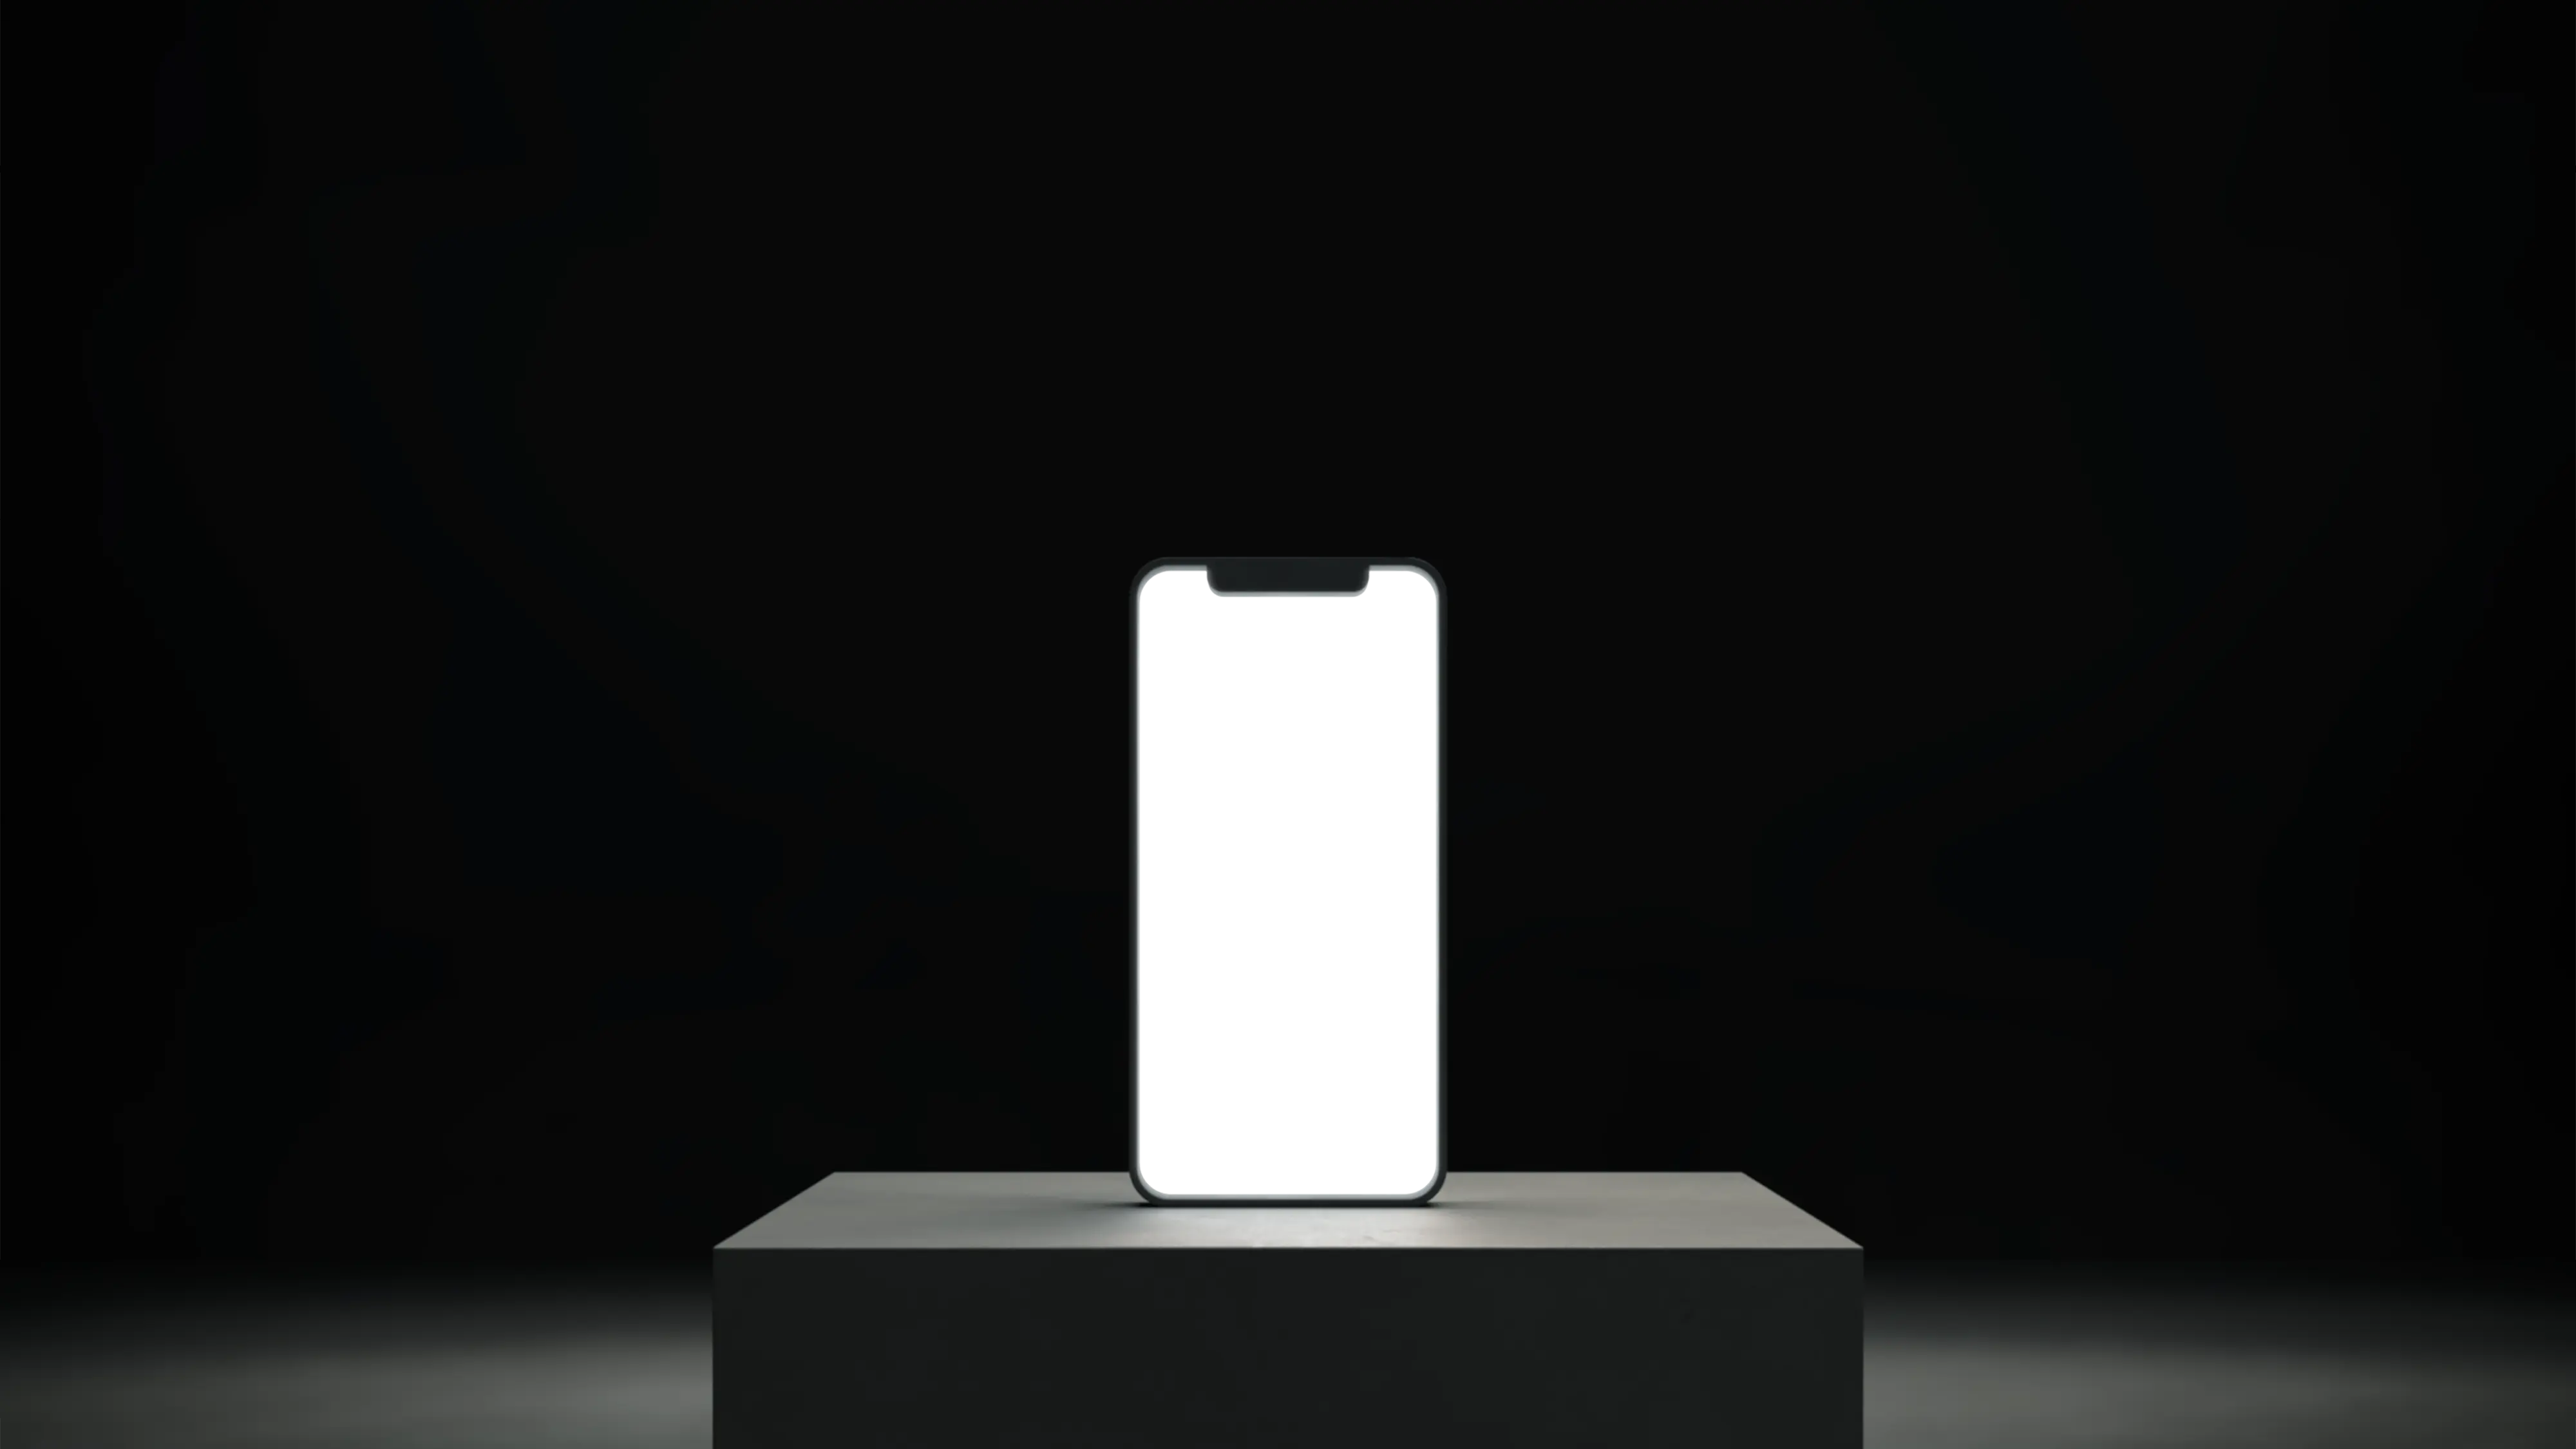 Smartphone auf einem Sockel mit beleuchtetem leeren weißen Bildschirm.